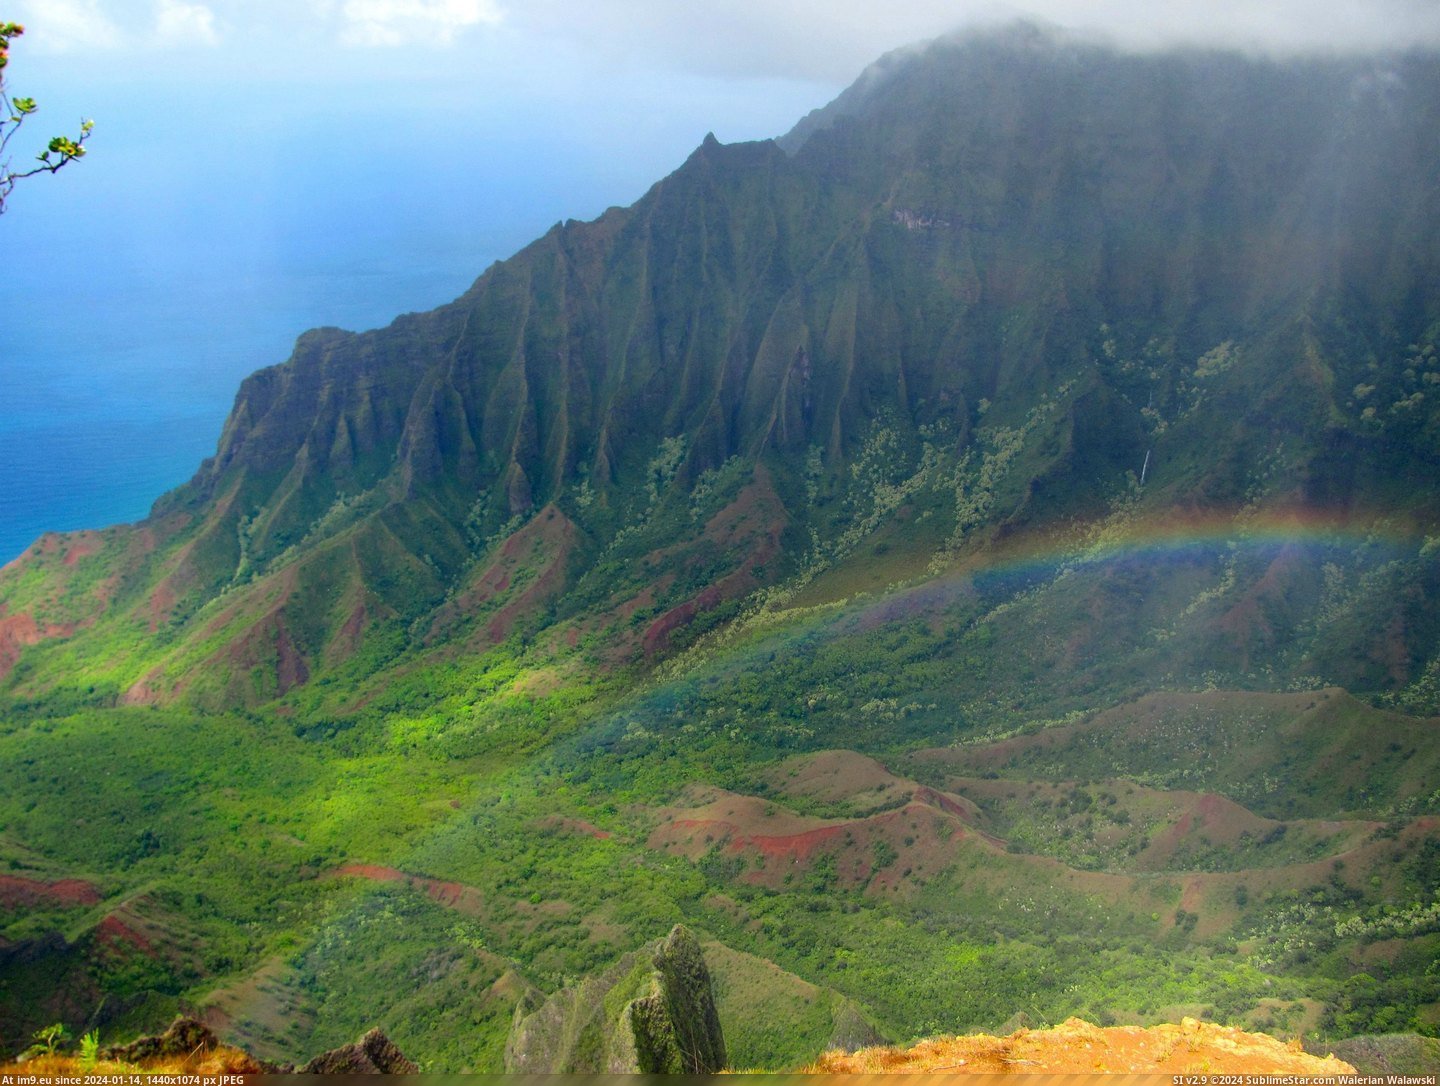 #Valley #Hawaii #Kauai #Kalalau #Trail #Ridge [Earthporn] Kalalau Valley from the Kalepa Ridge Trail - Kauai, Hawaii [OC] [3468 x 2736] Pic. (Image of album My r/EARTHPORN favs))